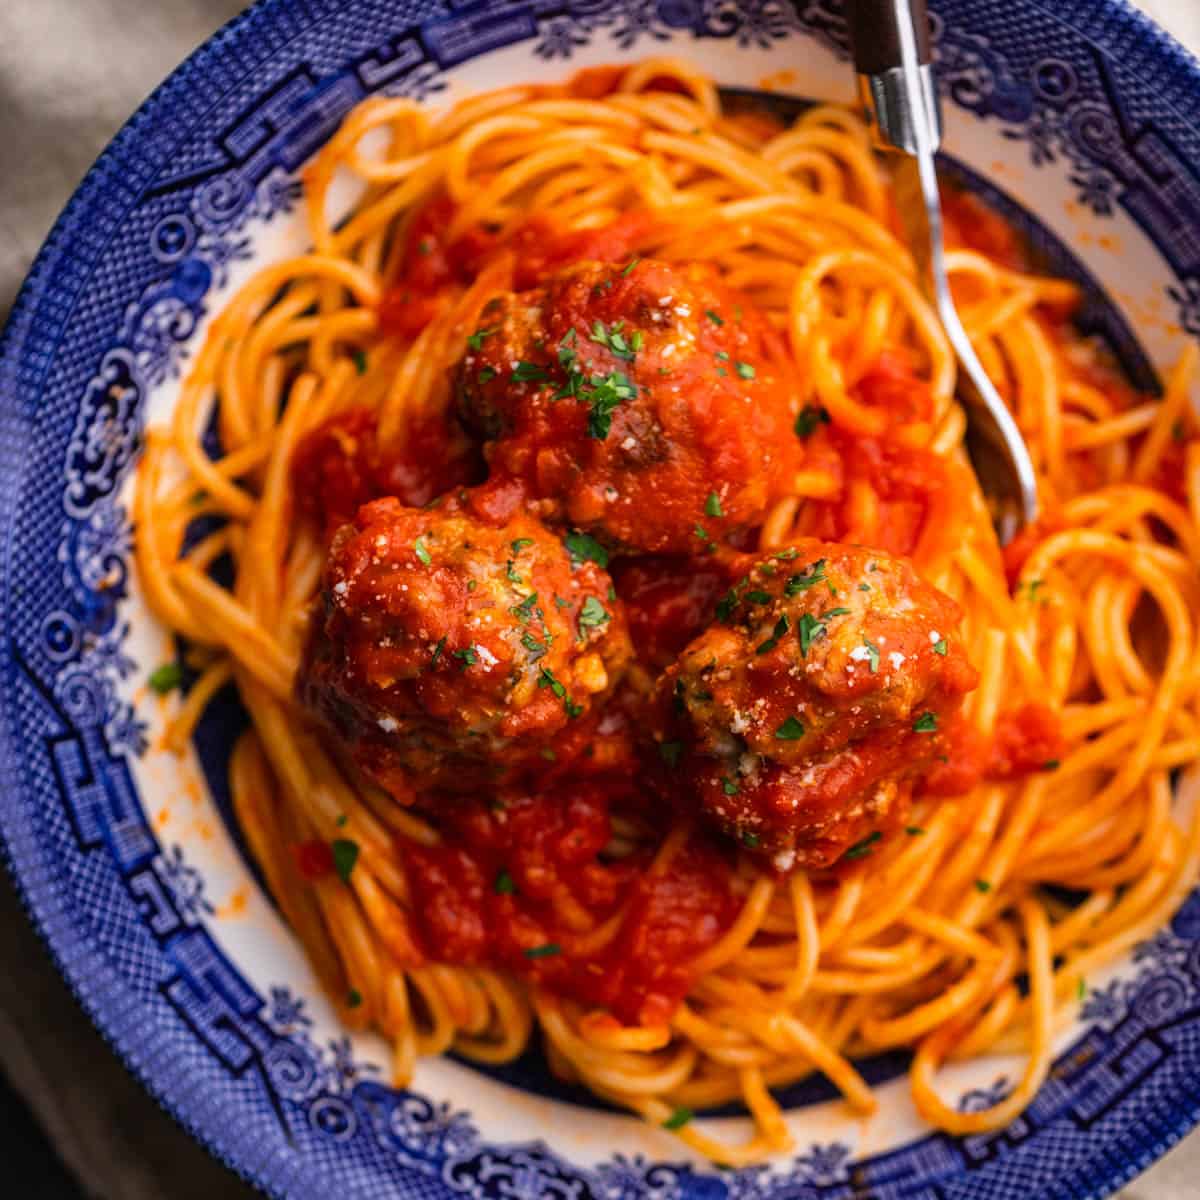 Oven Baked Italian Meatballs Recipe - Saporito Kitchen